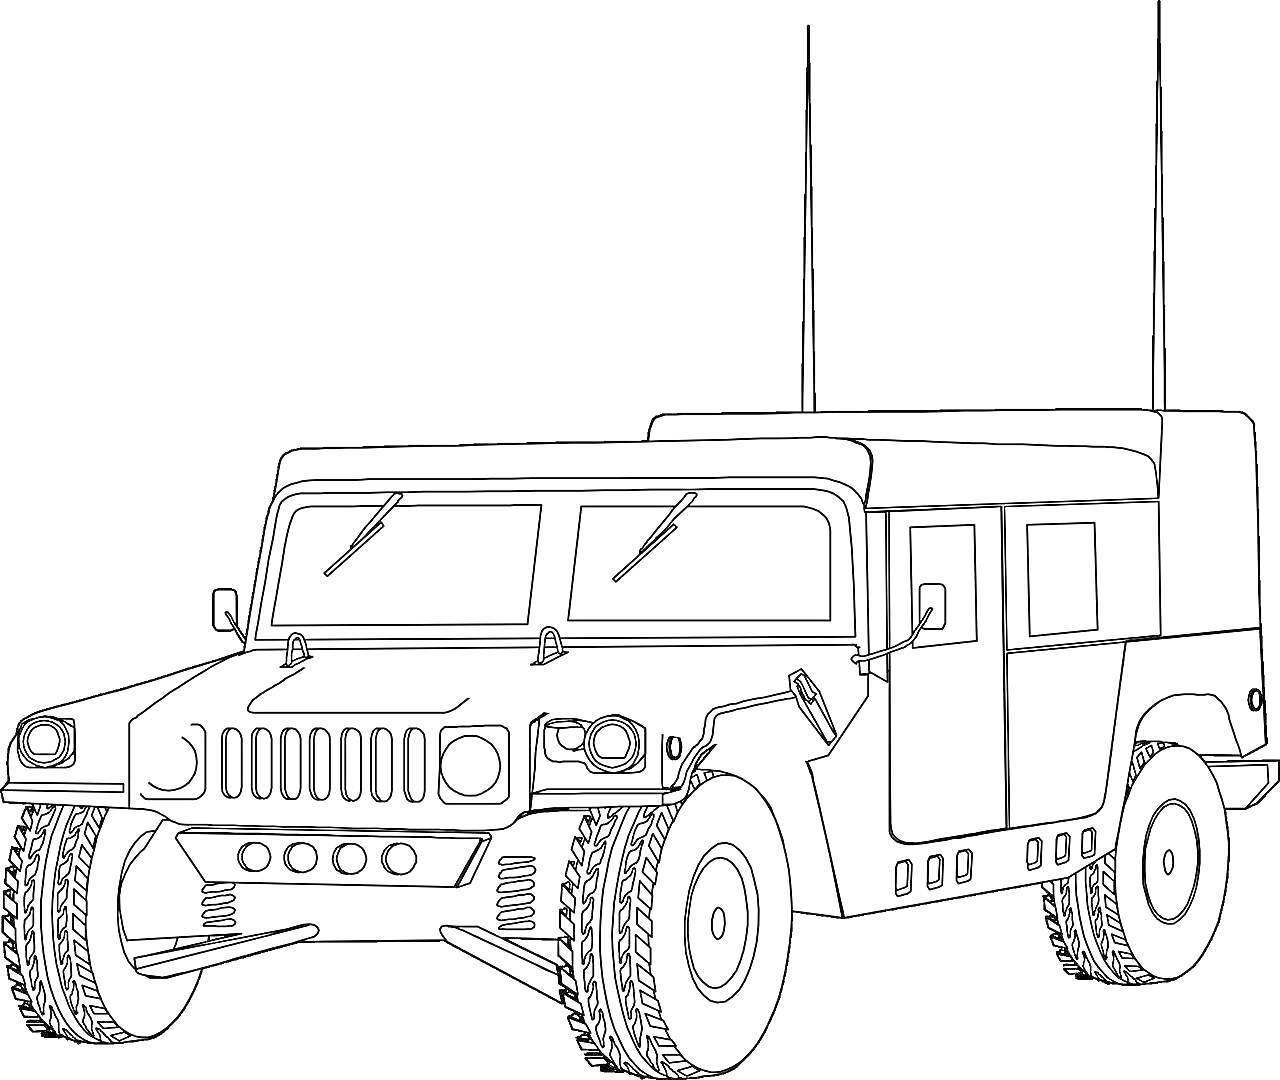 Военный Хаммер с антеннами, детально прорисованный (вид спереди-сбоку)